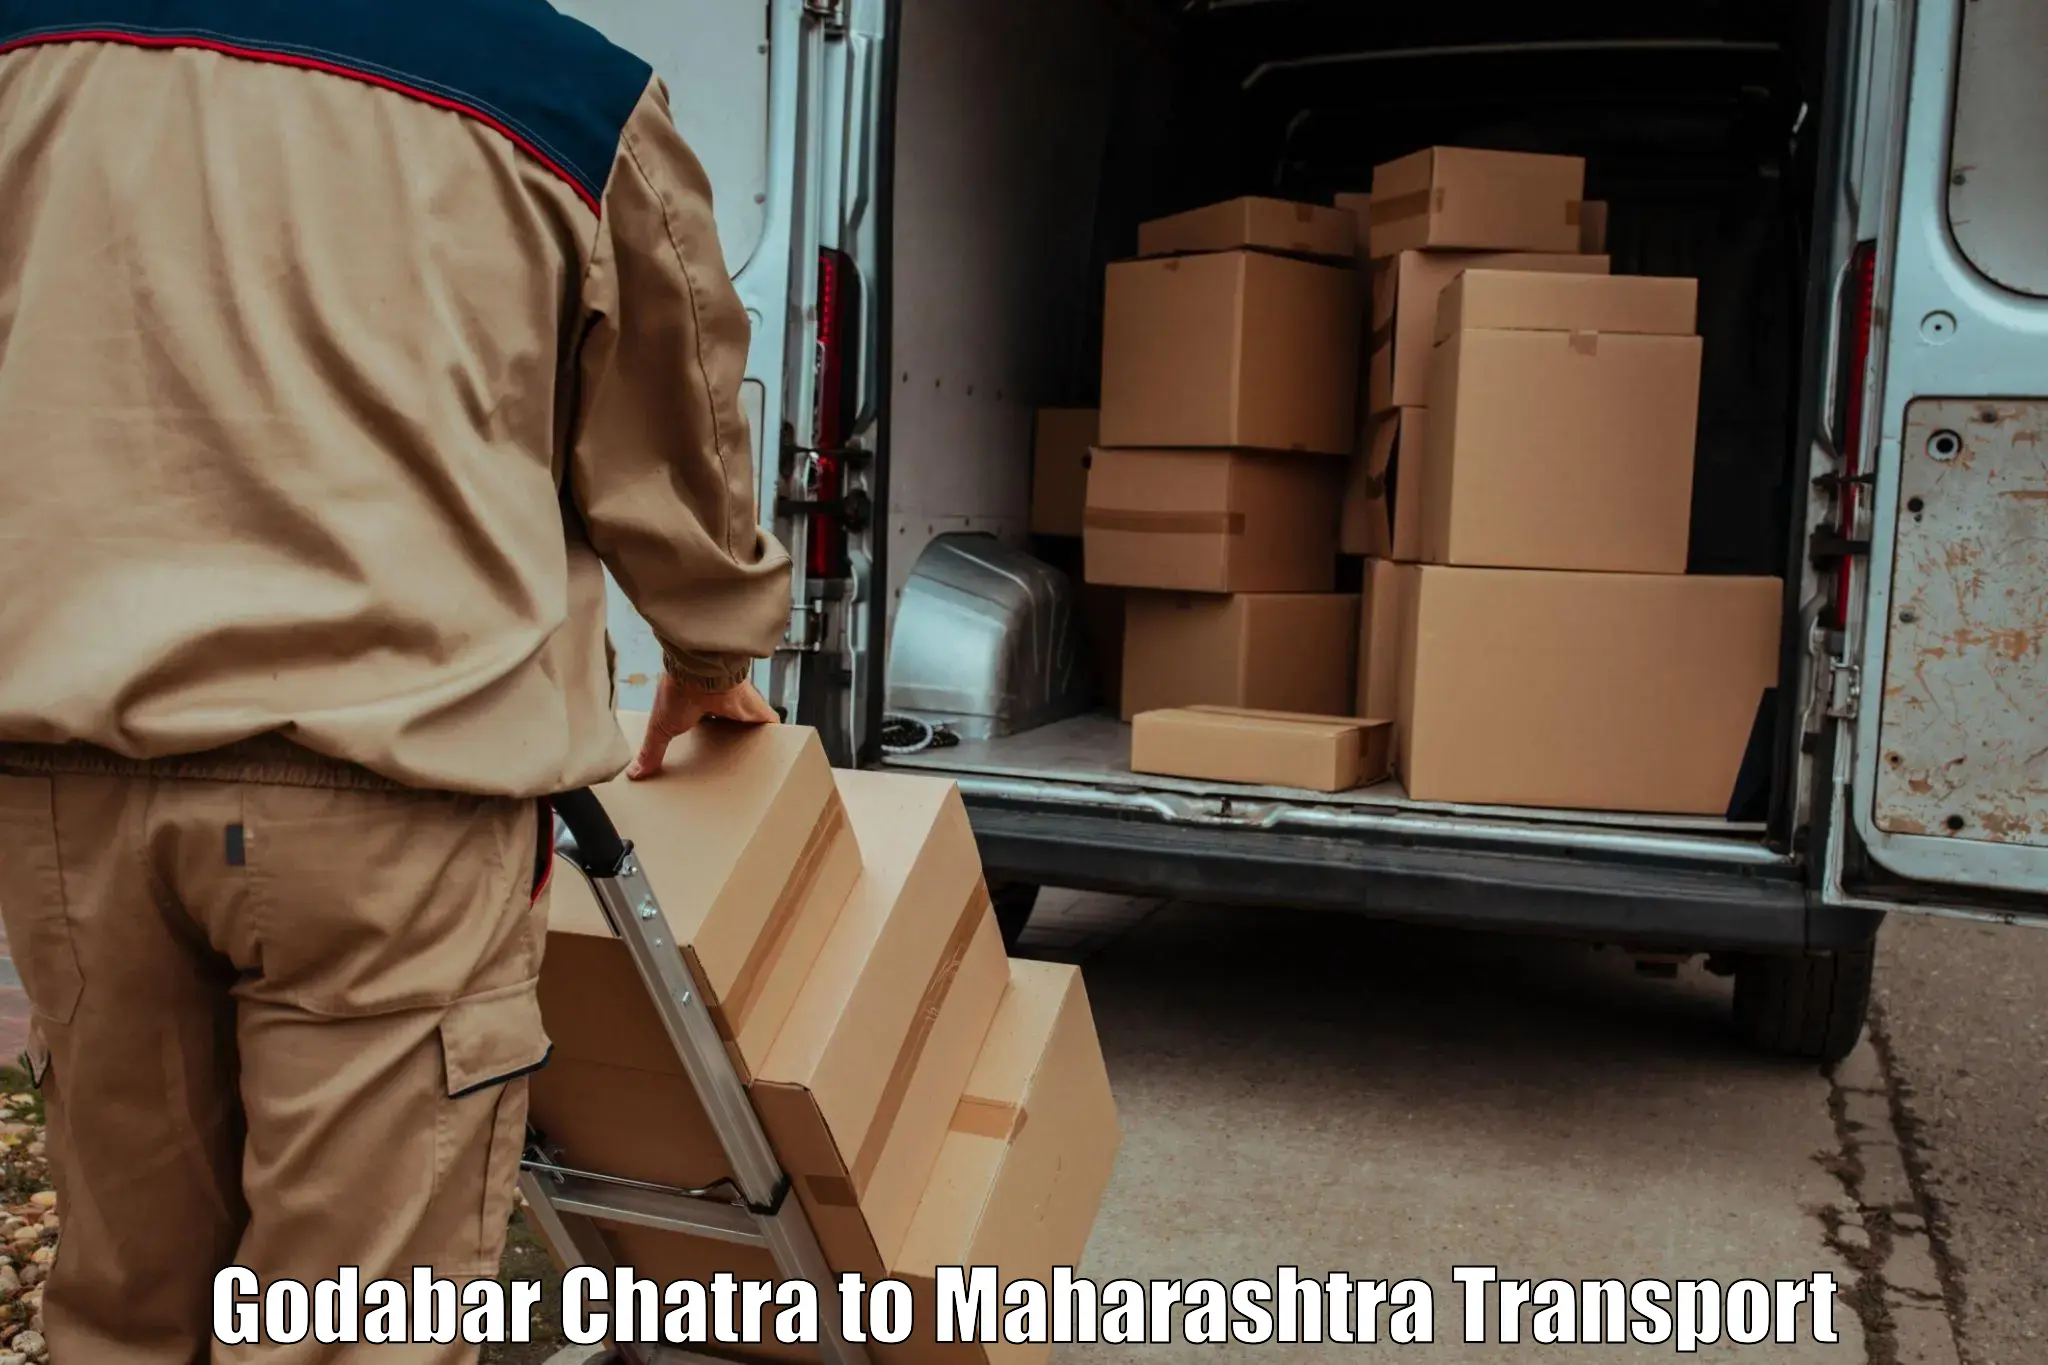 International cargo transportation services Godabar Chatra to Maharashtra